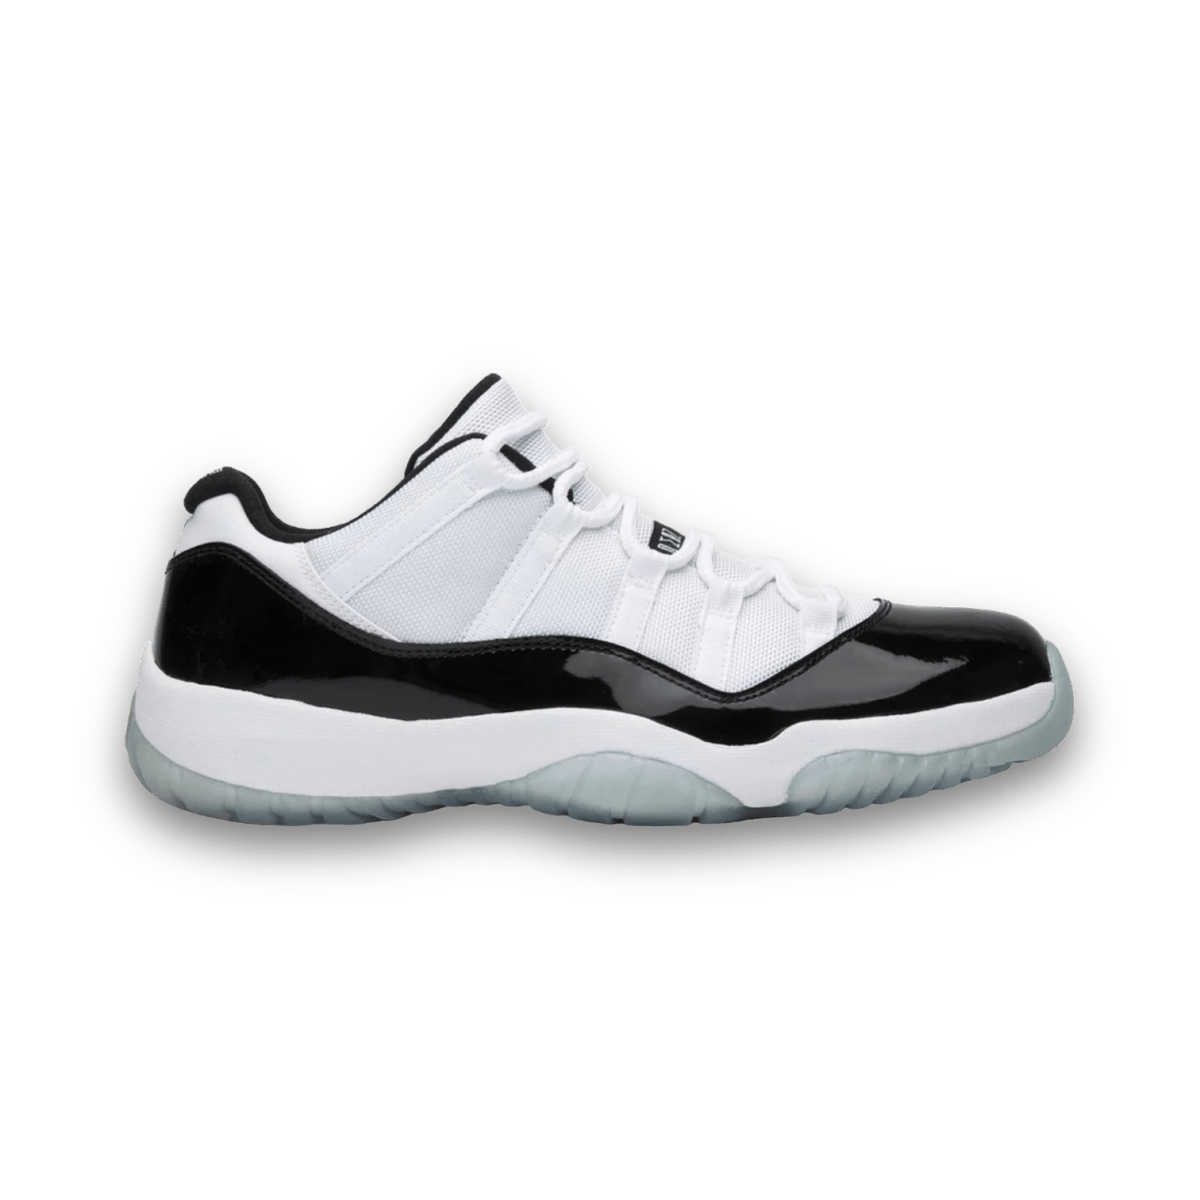 Air Jordan 11 Retro Low 'Concord' - Low Sneaker - Jawns on Fire Sneakers & Streetwear